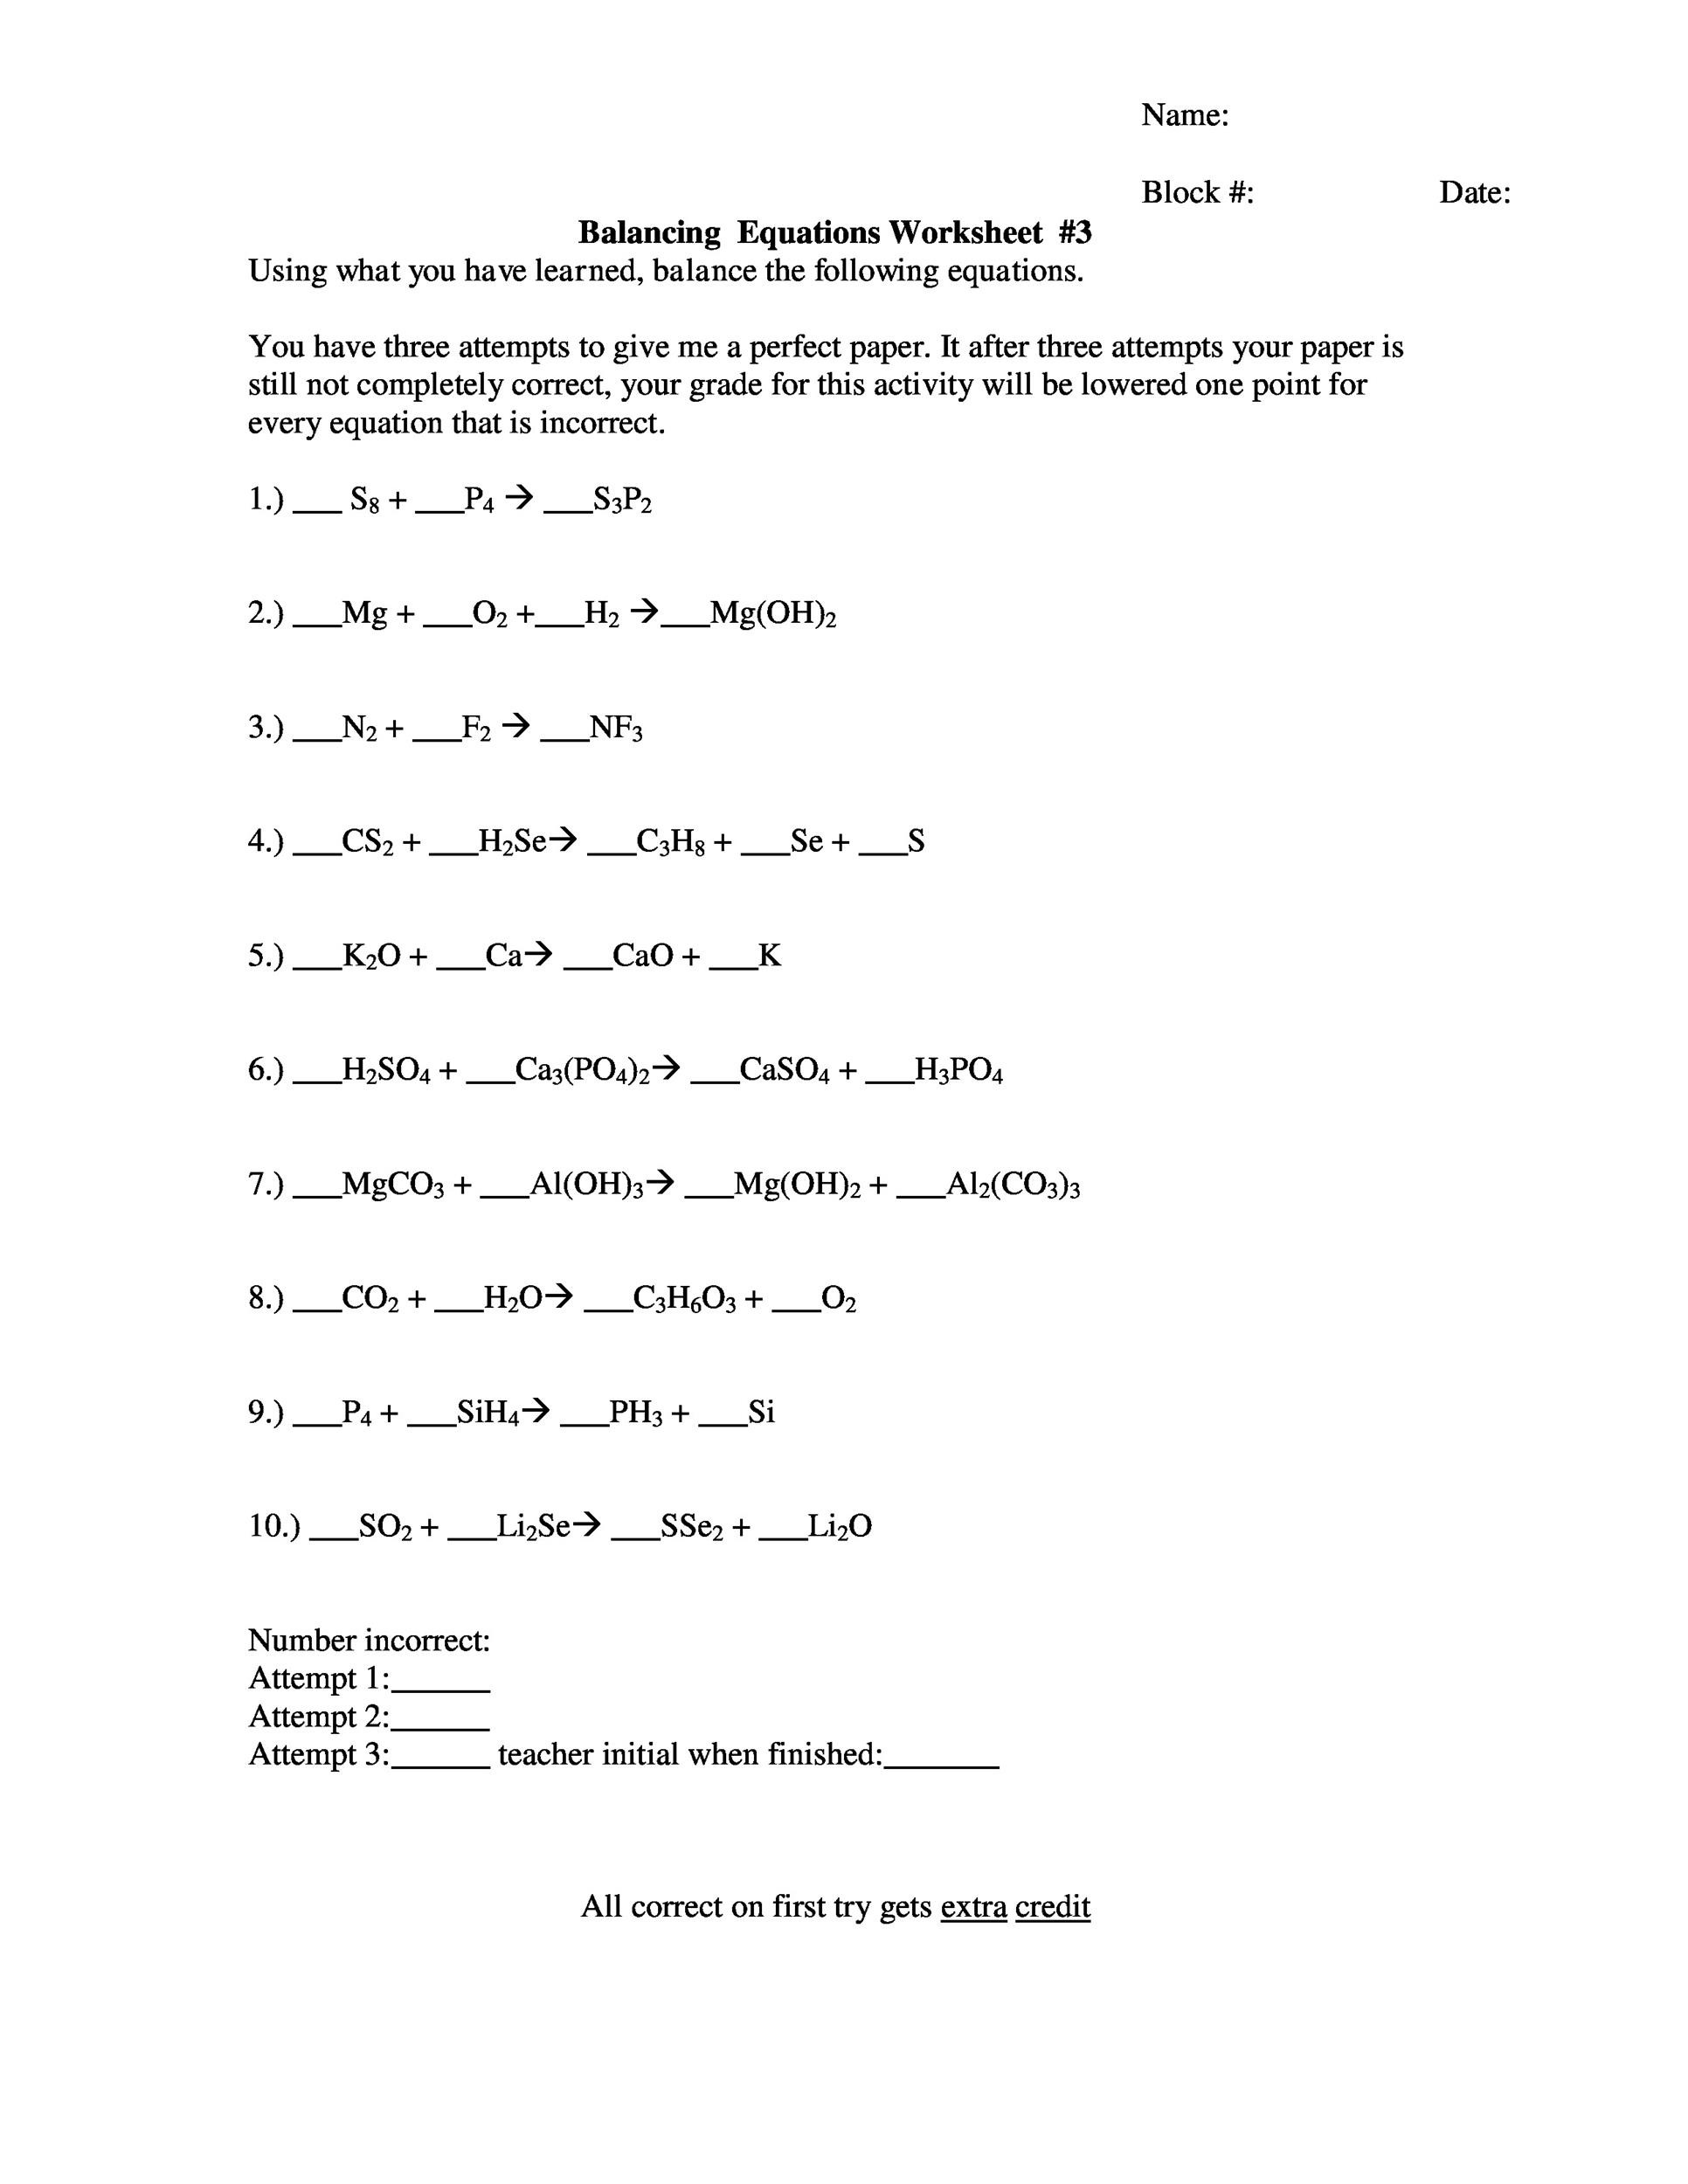 Free balancing equations 46